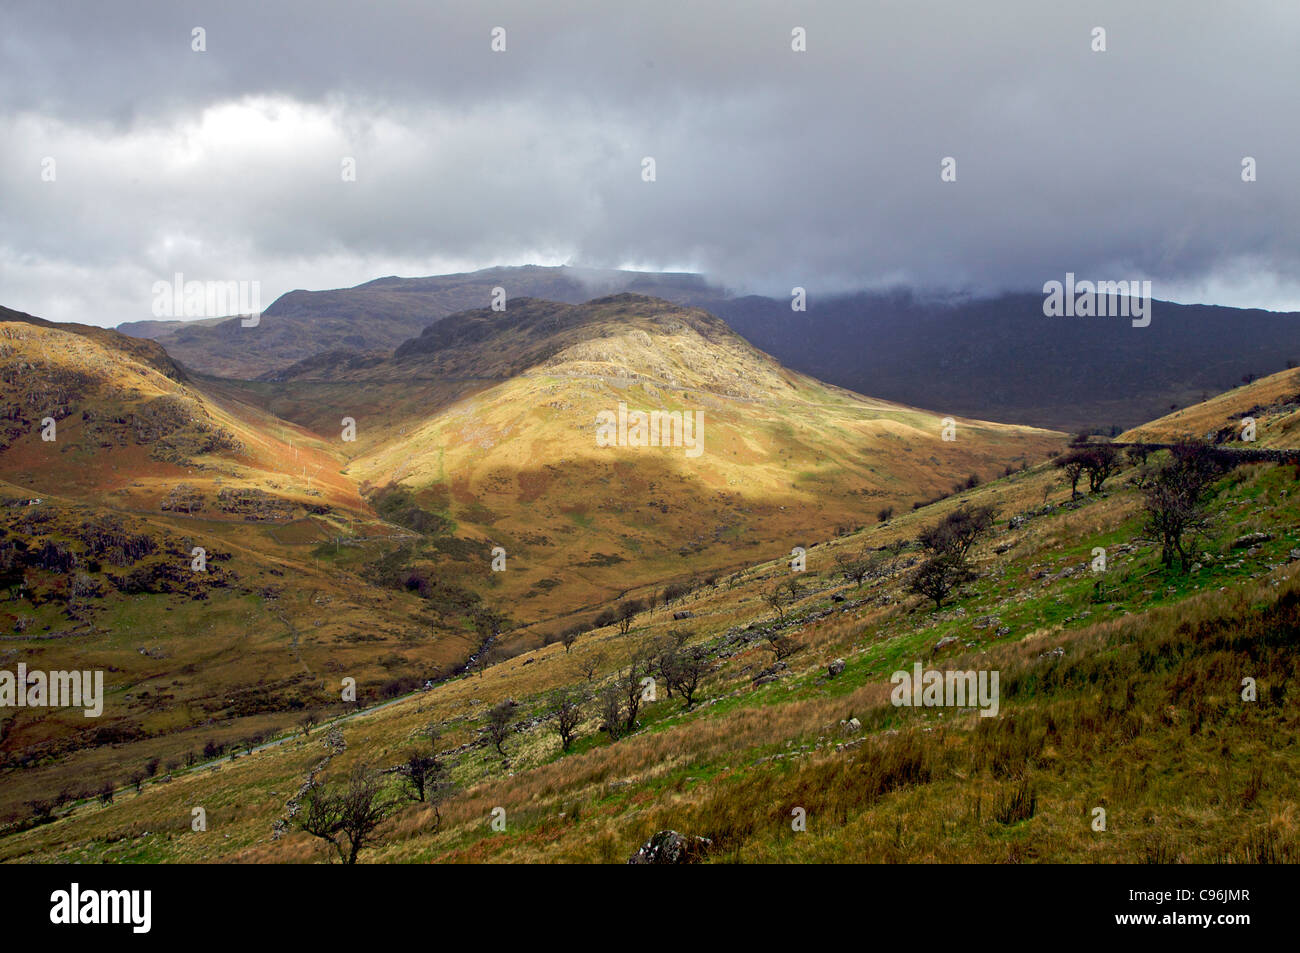 Nant Gwynant valley looking towards the Llanberis pass, North Wales Stock Photo